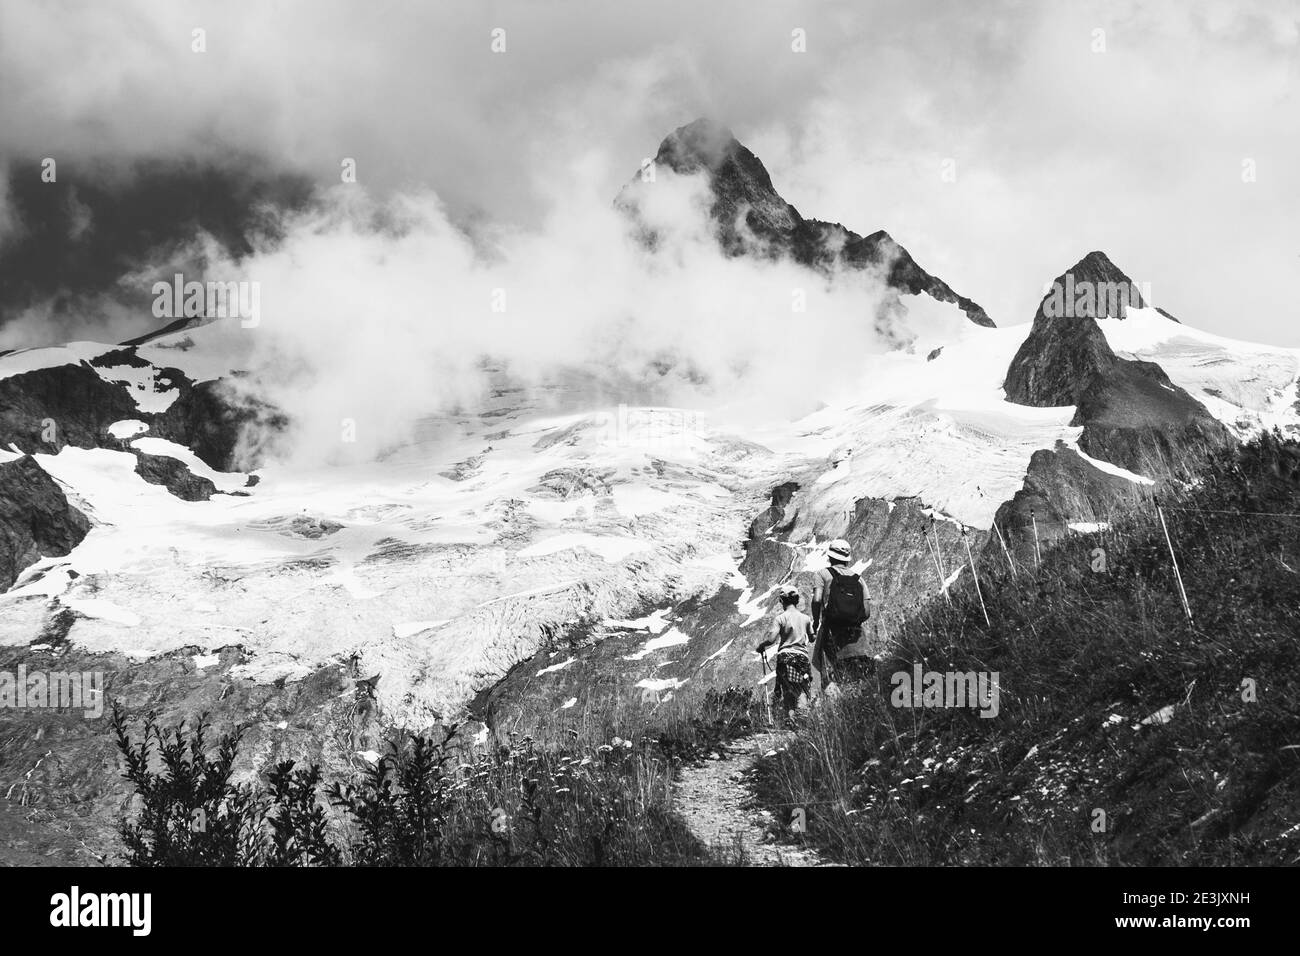 Vater und Sohn wandern im Sommer in den französischen Alpen. Der Aiguille des Glaciers, Berg im Mont Blanc Massiv. Savoie, Frankreich. Schwarzweißfoto Stockfoto